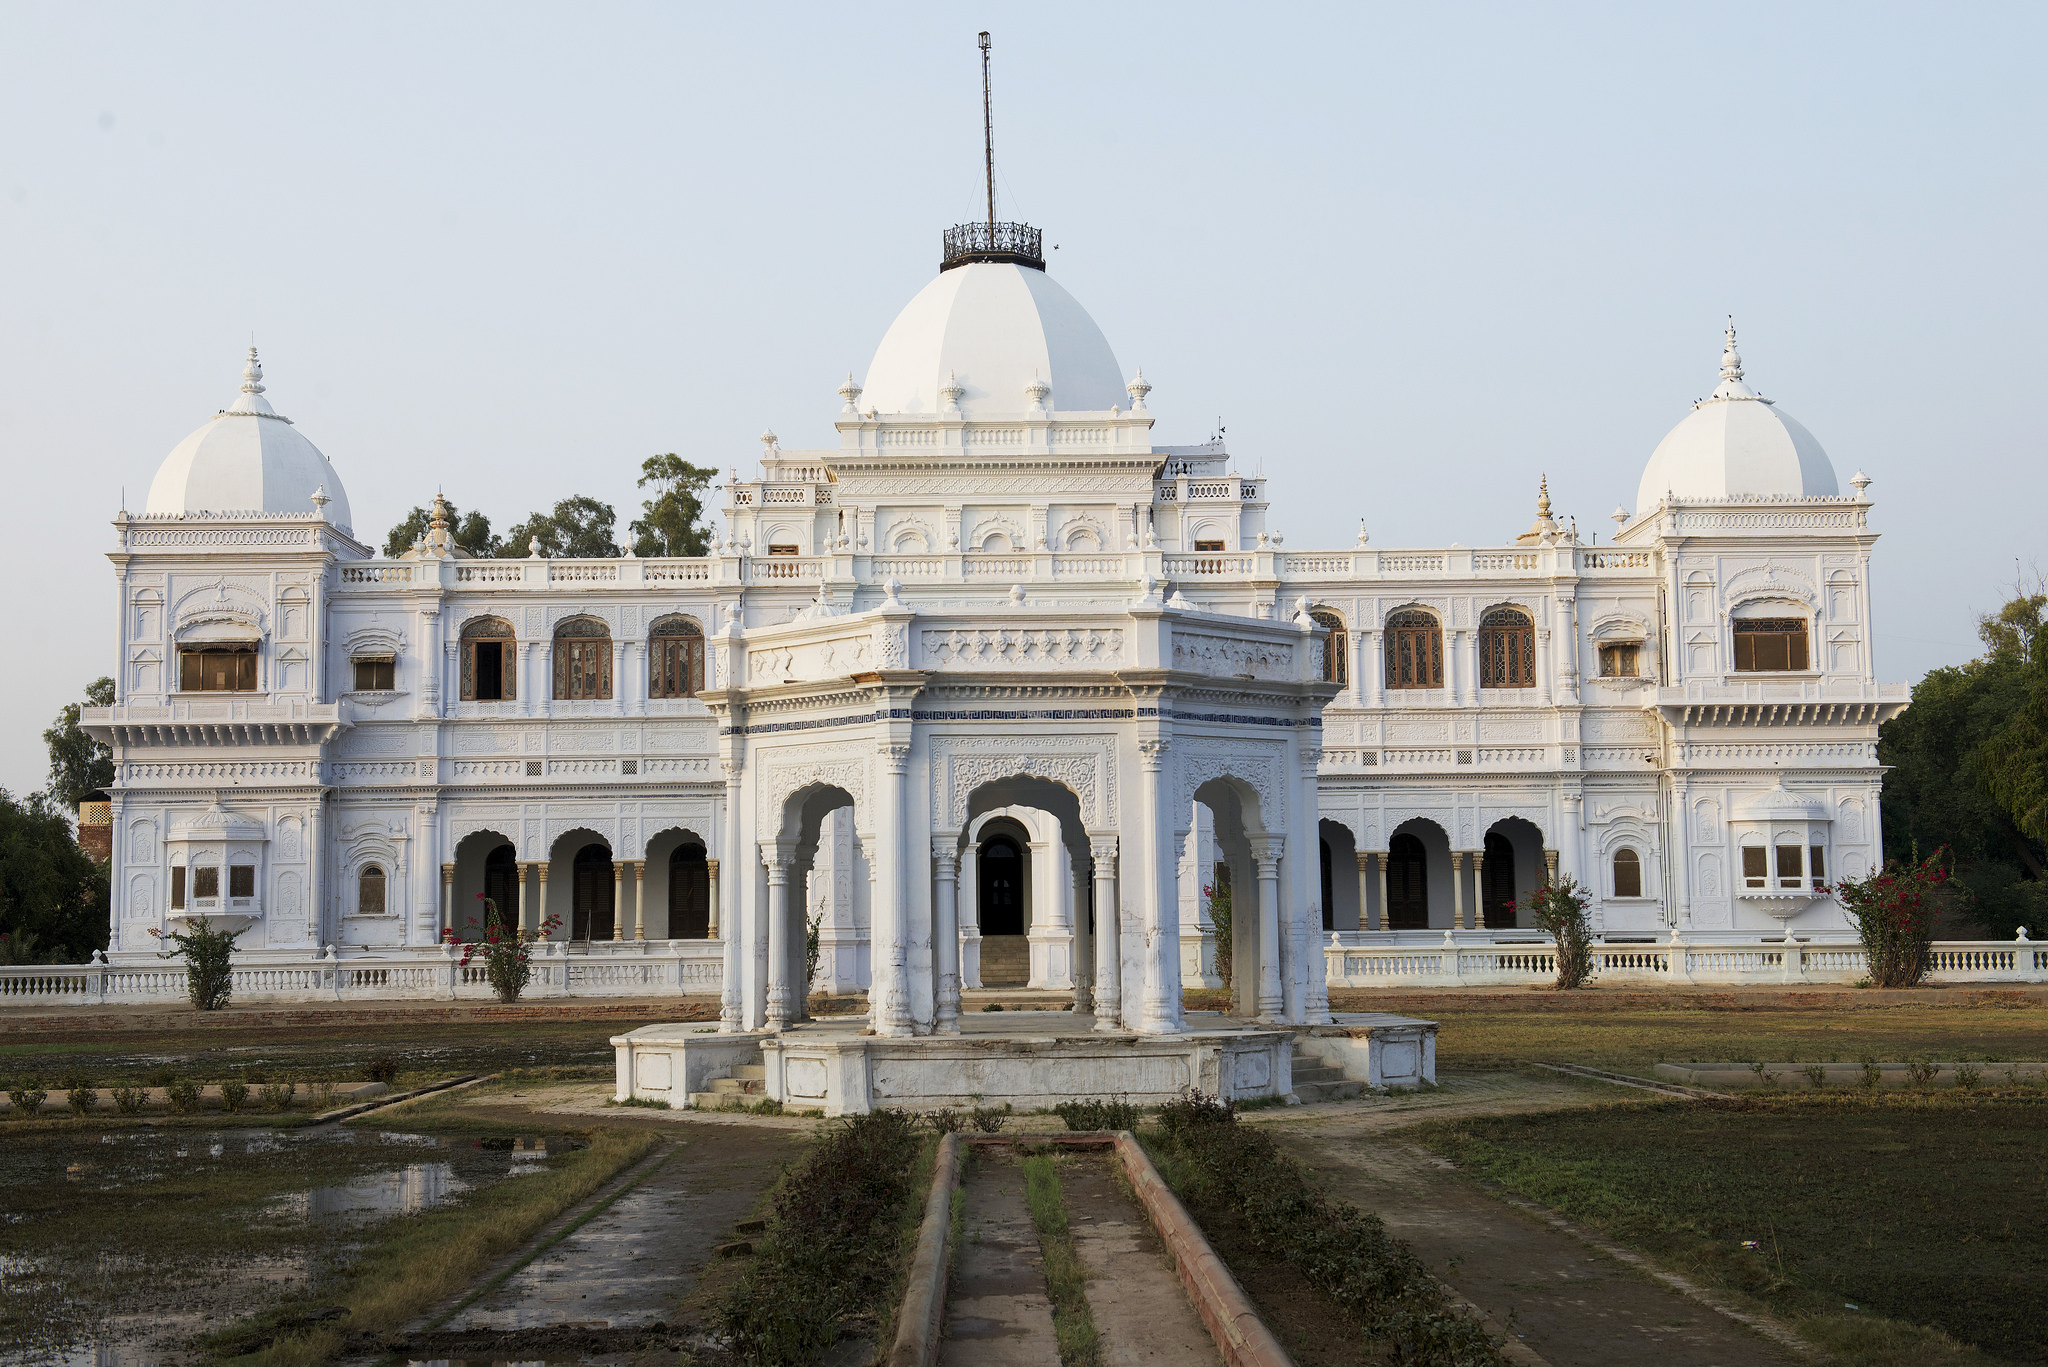 sadiq garh palace abandoned but not forgotten